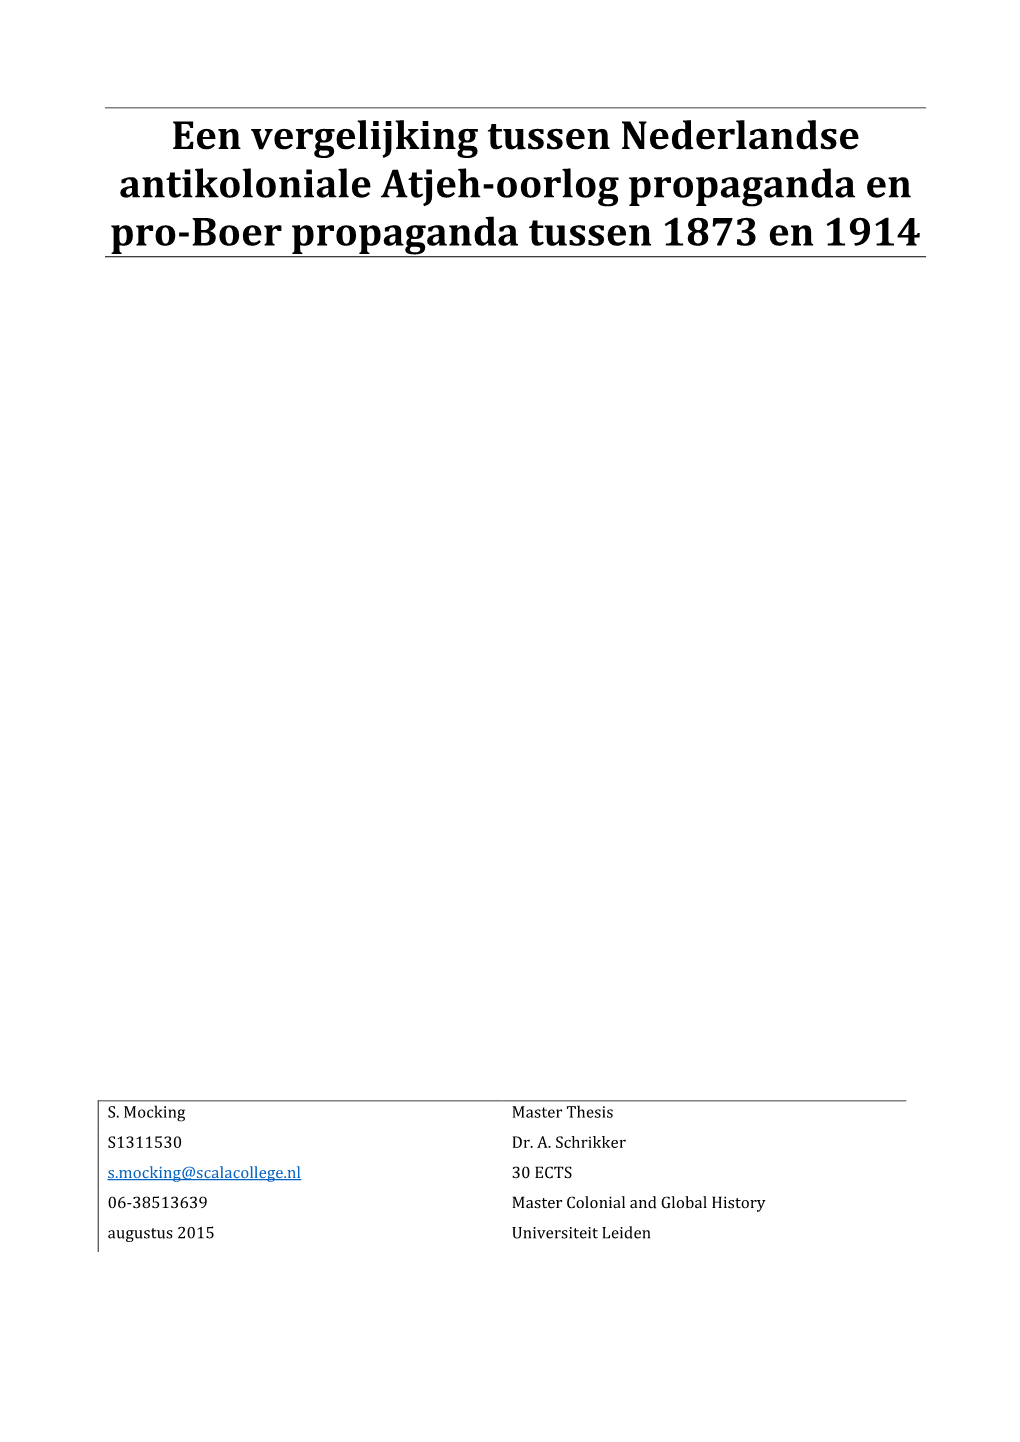 Een Vergelijking Tussen Nederlandse Antikoloniale Atjeh-Oorlog Propaganda En Pro-Boer Propaganda Tussen 1873 En 1914